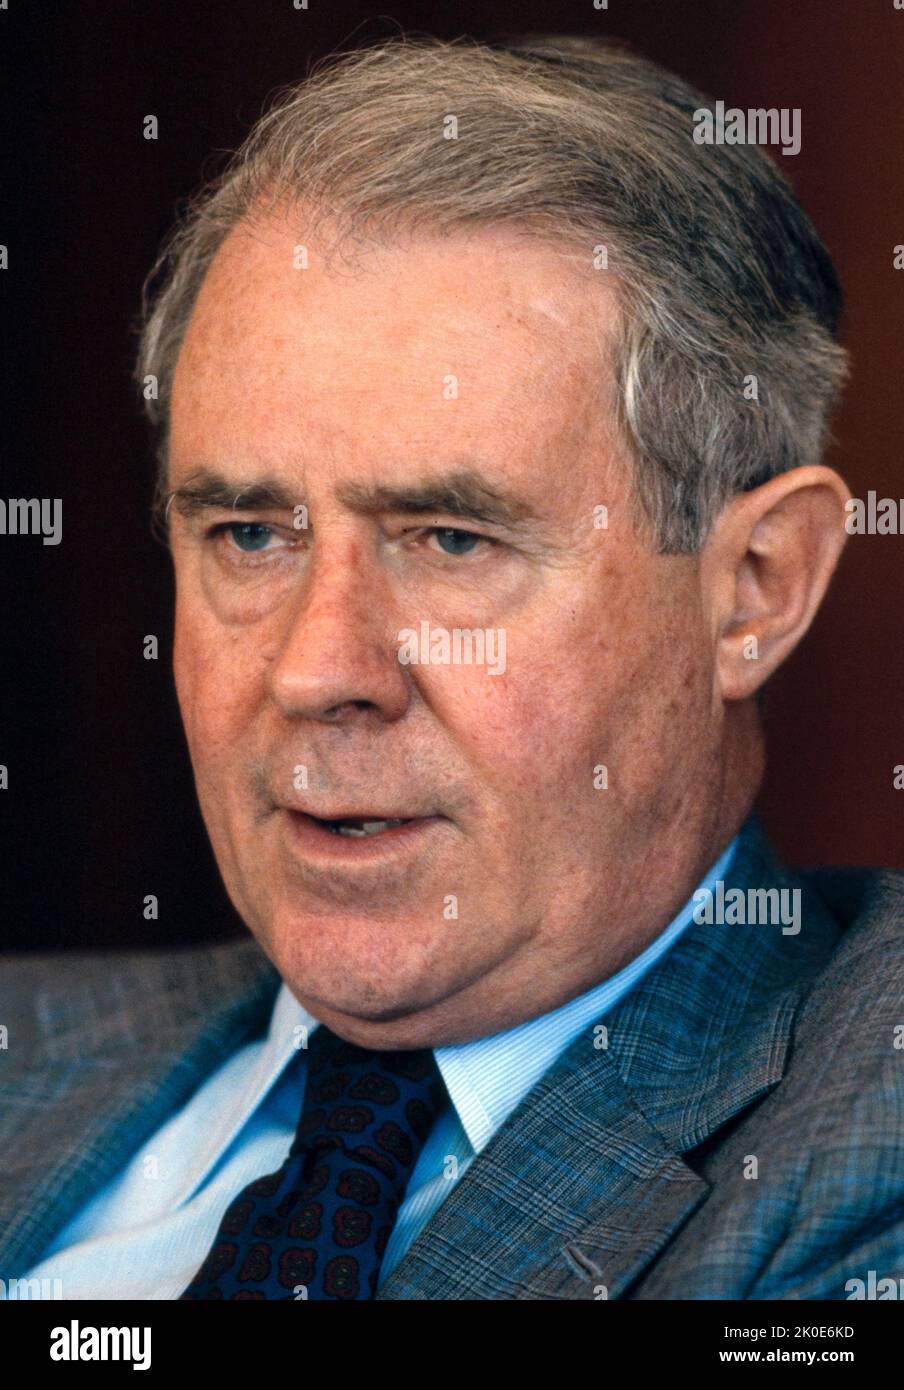 Cyrus Roberts Vance Sr. (27 mars 1917 - 12 janvier 2002) a été avocat américain et secrétaire d'État des États-Unis sous le président Jimmy carter de 1977 à 1980. Banque D'Images